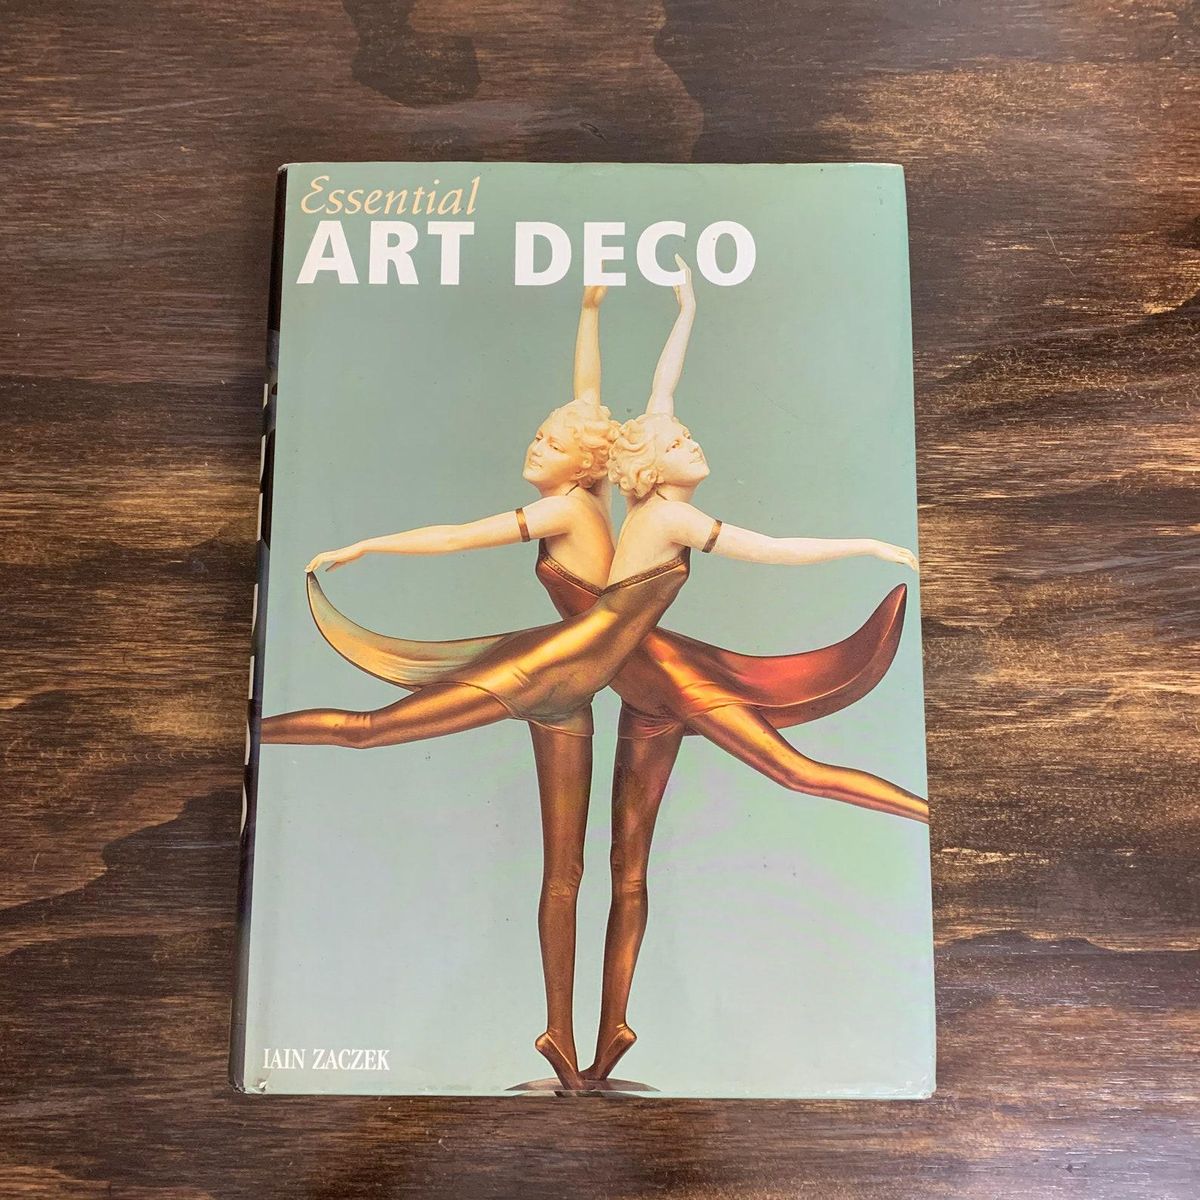 Essential Art Deco Book by Iain Zaczek